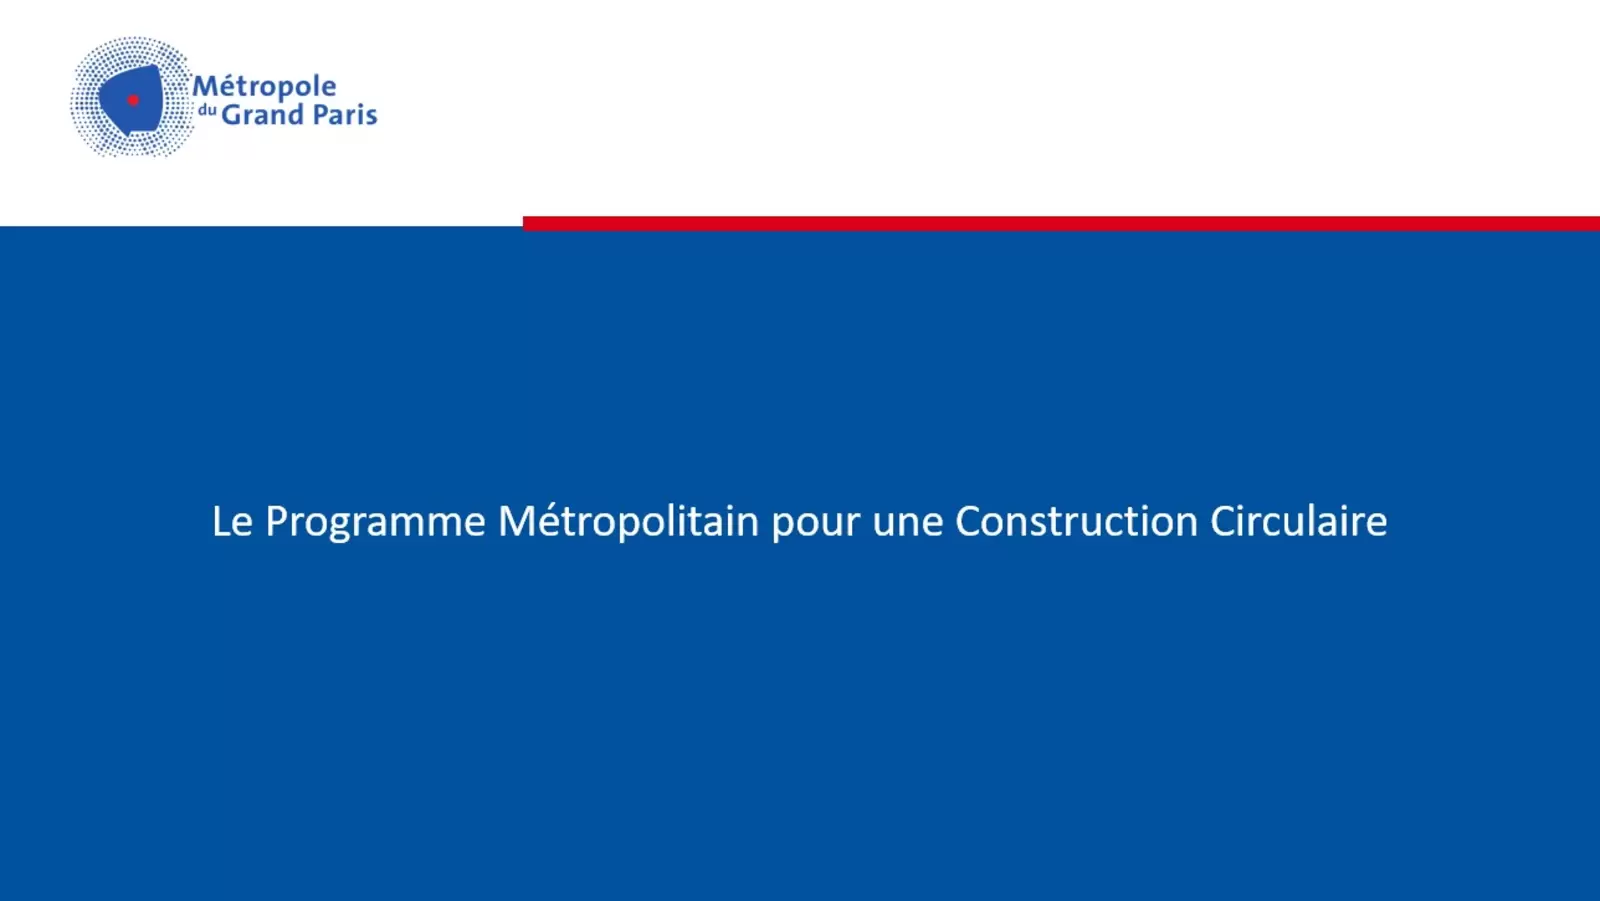 Le Programme Construction Circulaire de la Métropole du Grand Paris